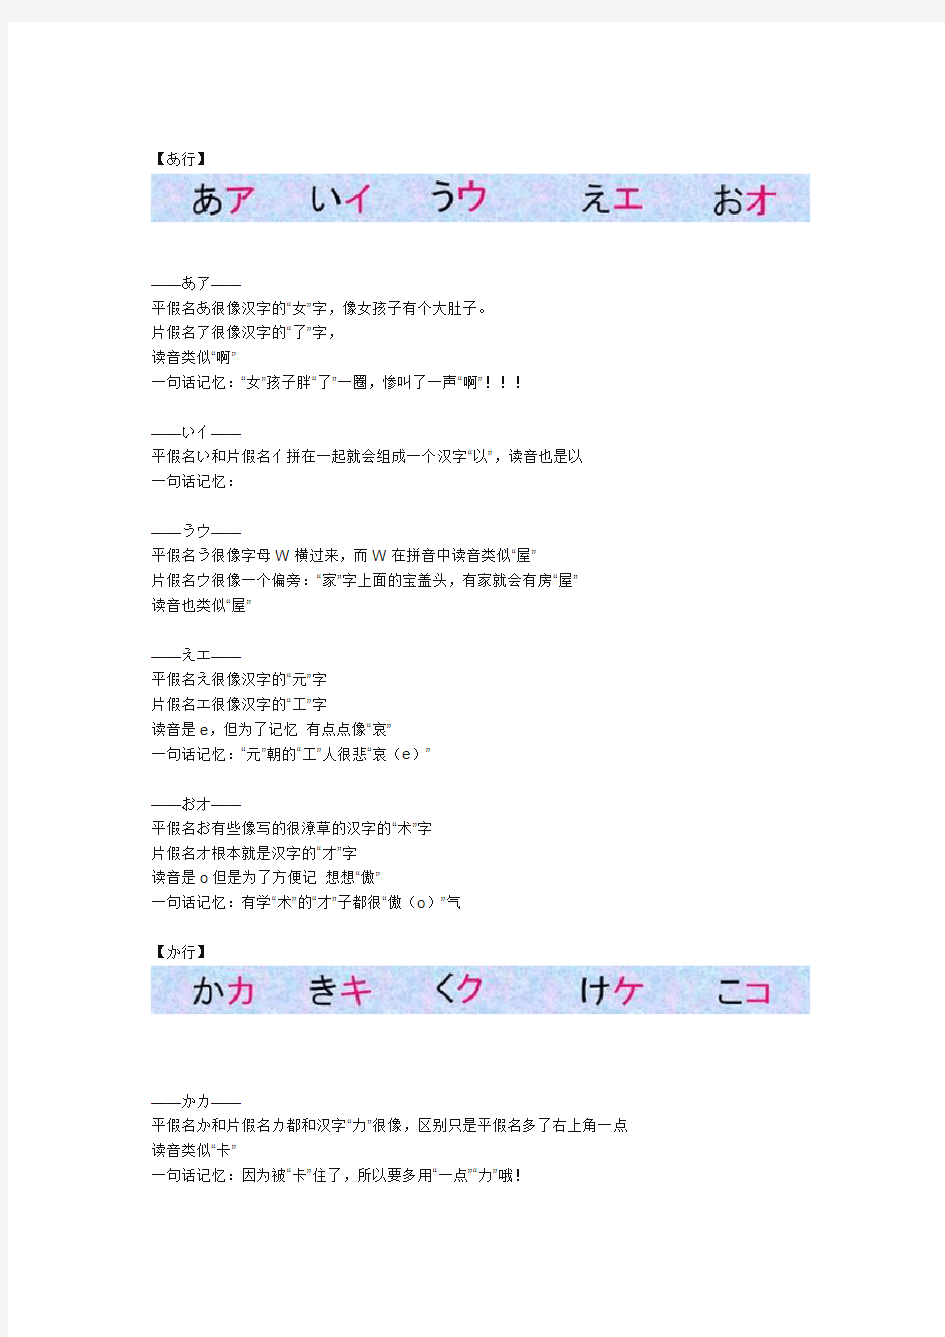 【潭州教育日语学习】超级好用日语五十音图记忆方法